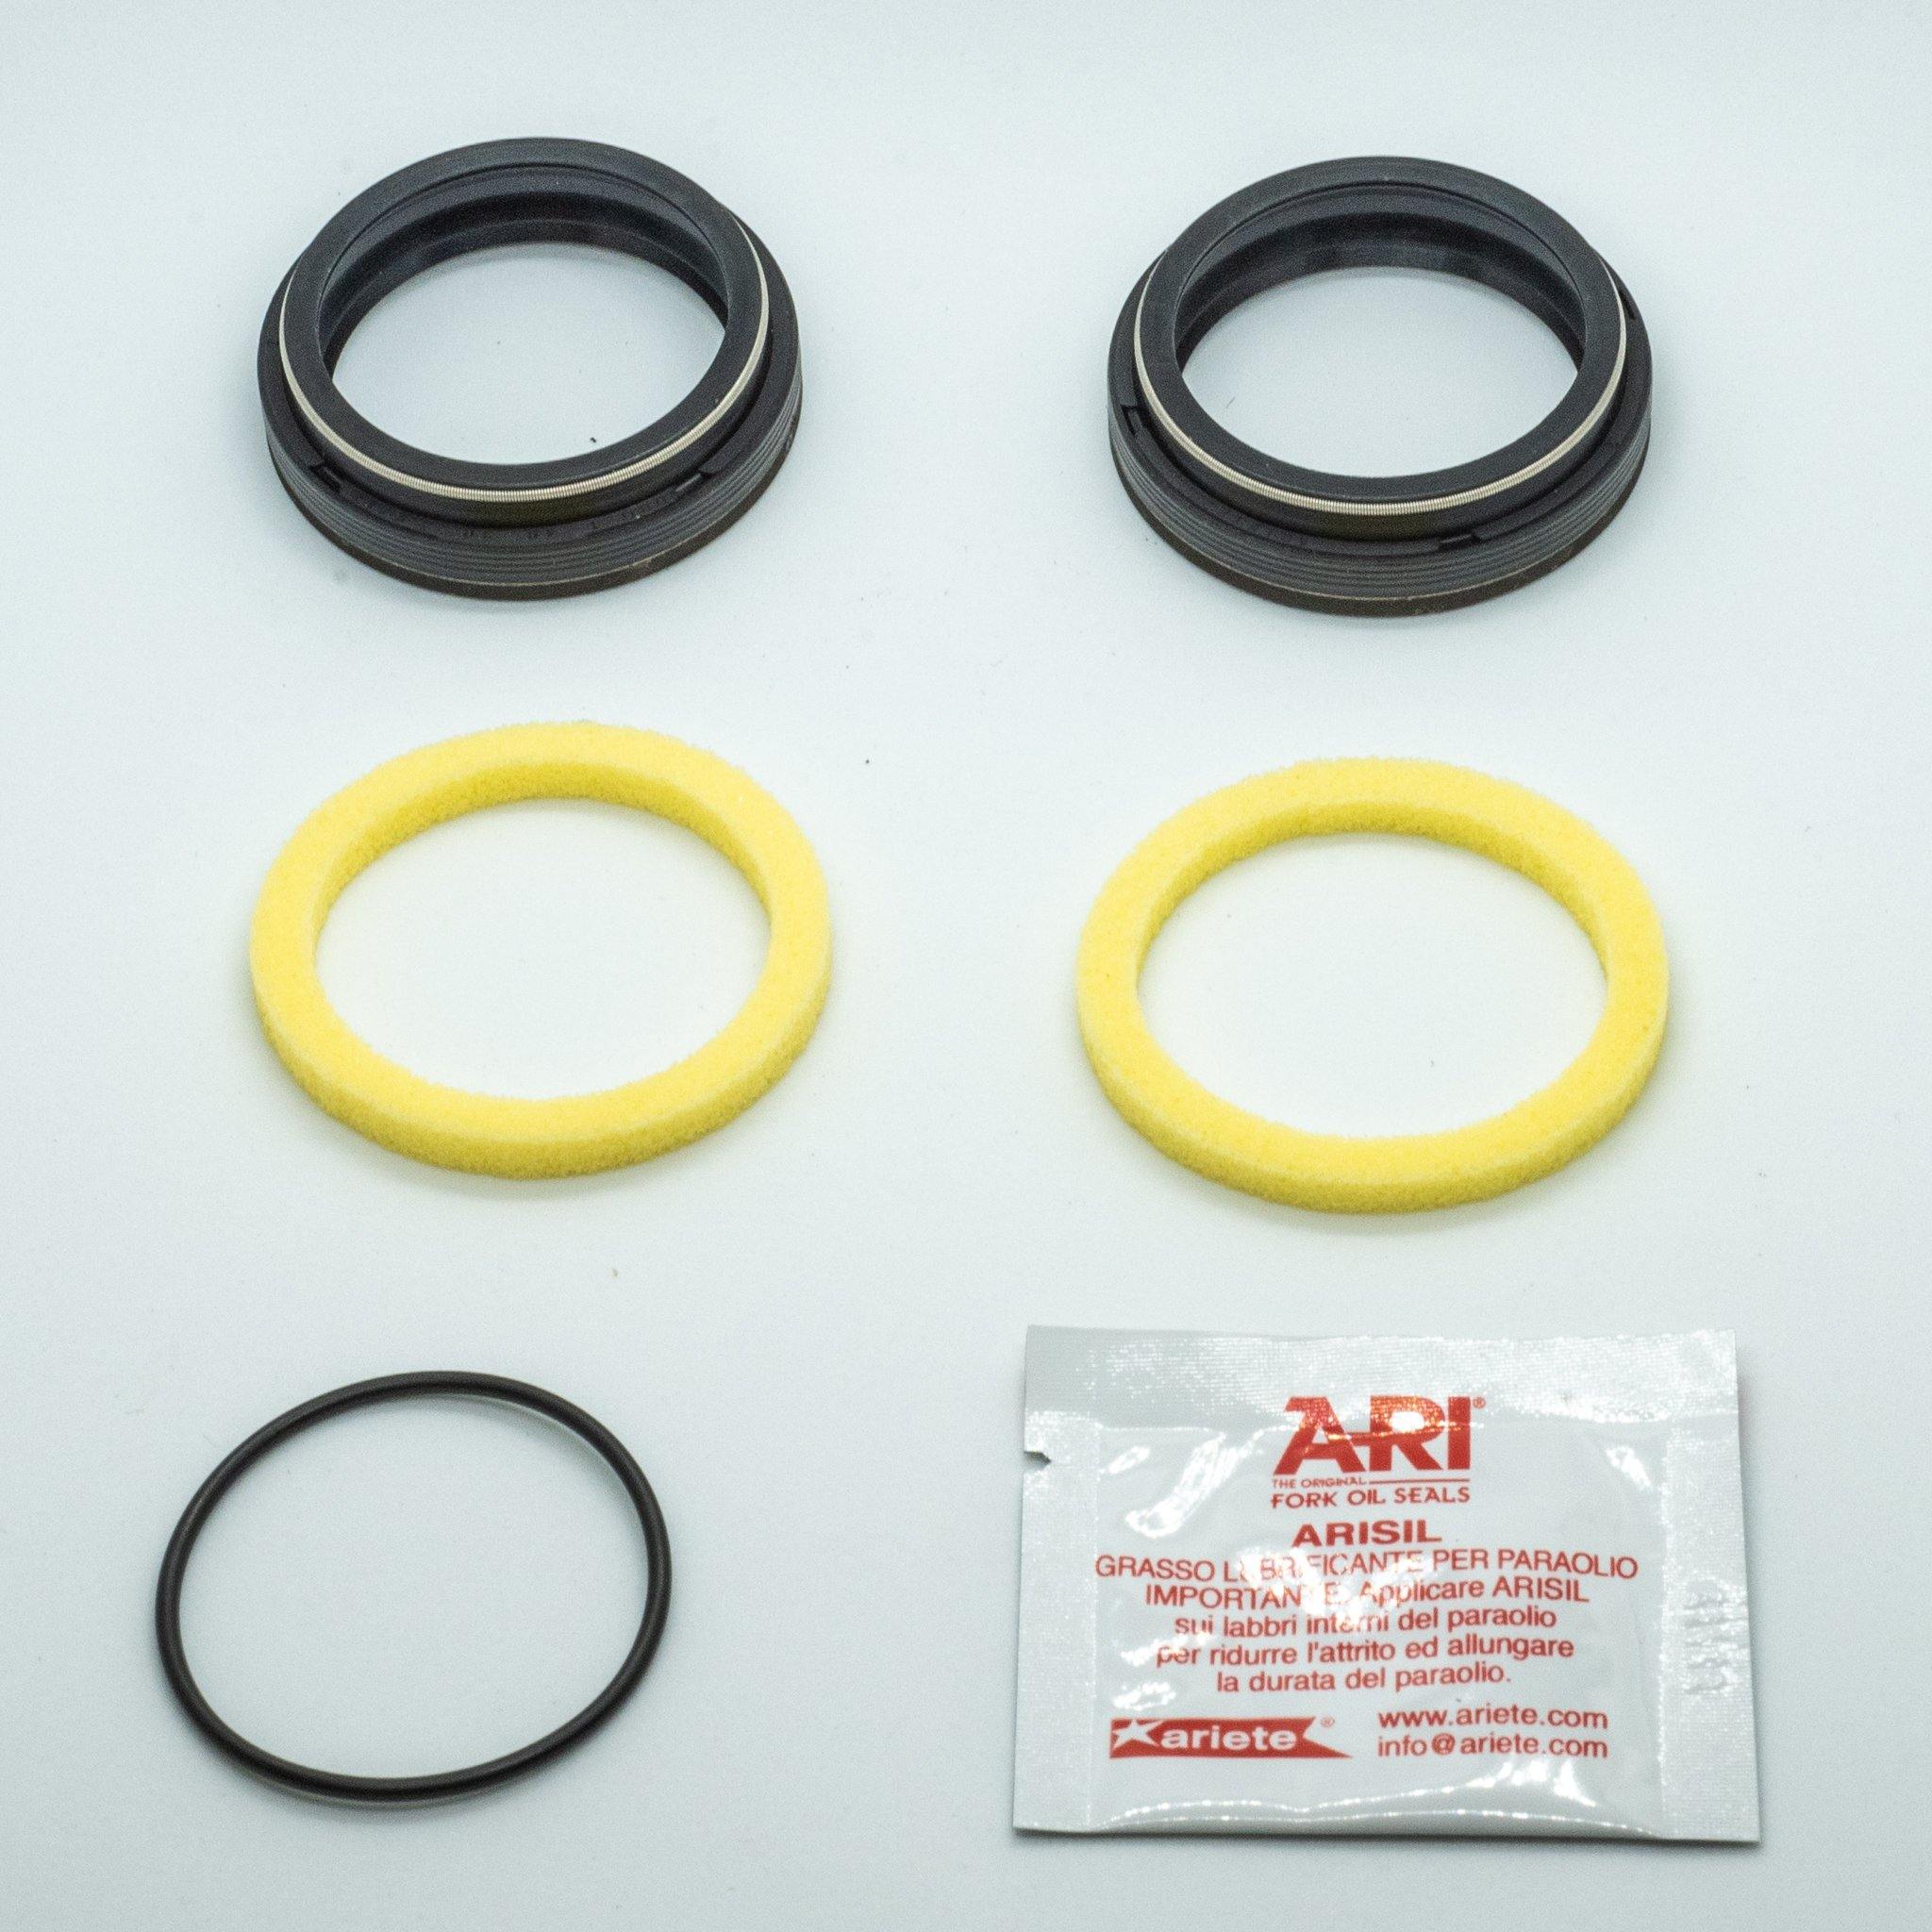 ARI Fork Oil Seals - 34 Diameter - GAMUX